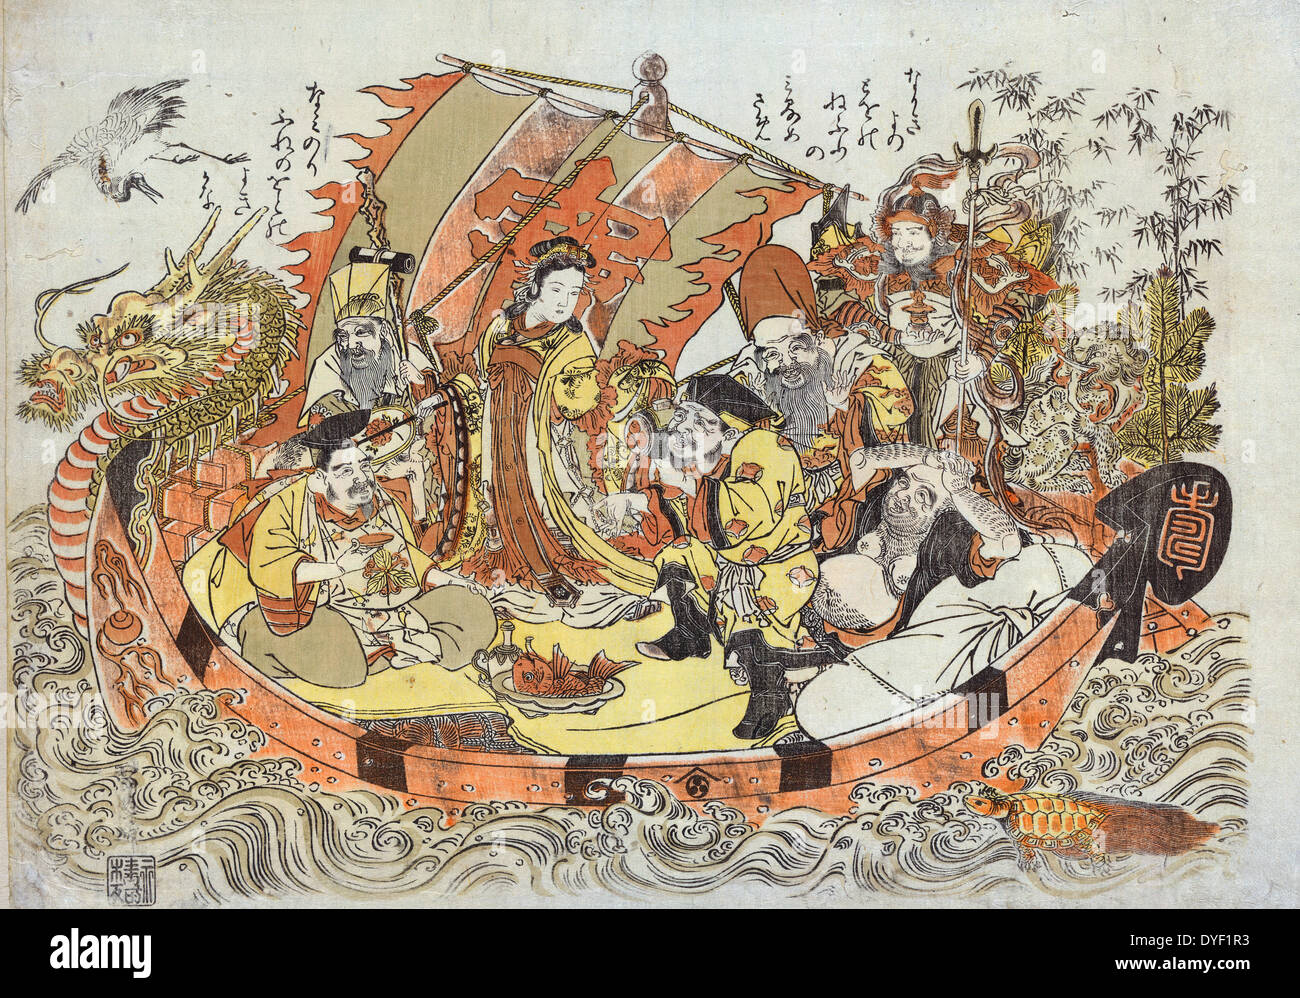 Shichifukujin takarabune (sette divinità della buona fortuna nel tesoro barca). Da Kitao Shigemasa, 1739-1820, artista giapponese. datati tra il 1772 e il 1781. Le sette divinità giapponese di buona fortuna (Ebisu, Daikokuten, Bishamonten, Benzaiten, Fukurokuju, Hotei e Jurojin) in un drago con testa di barca tesoro, accompagnato da un airone e una tartaruga. Foto Stock